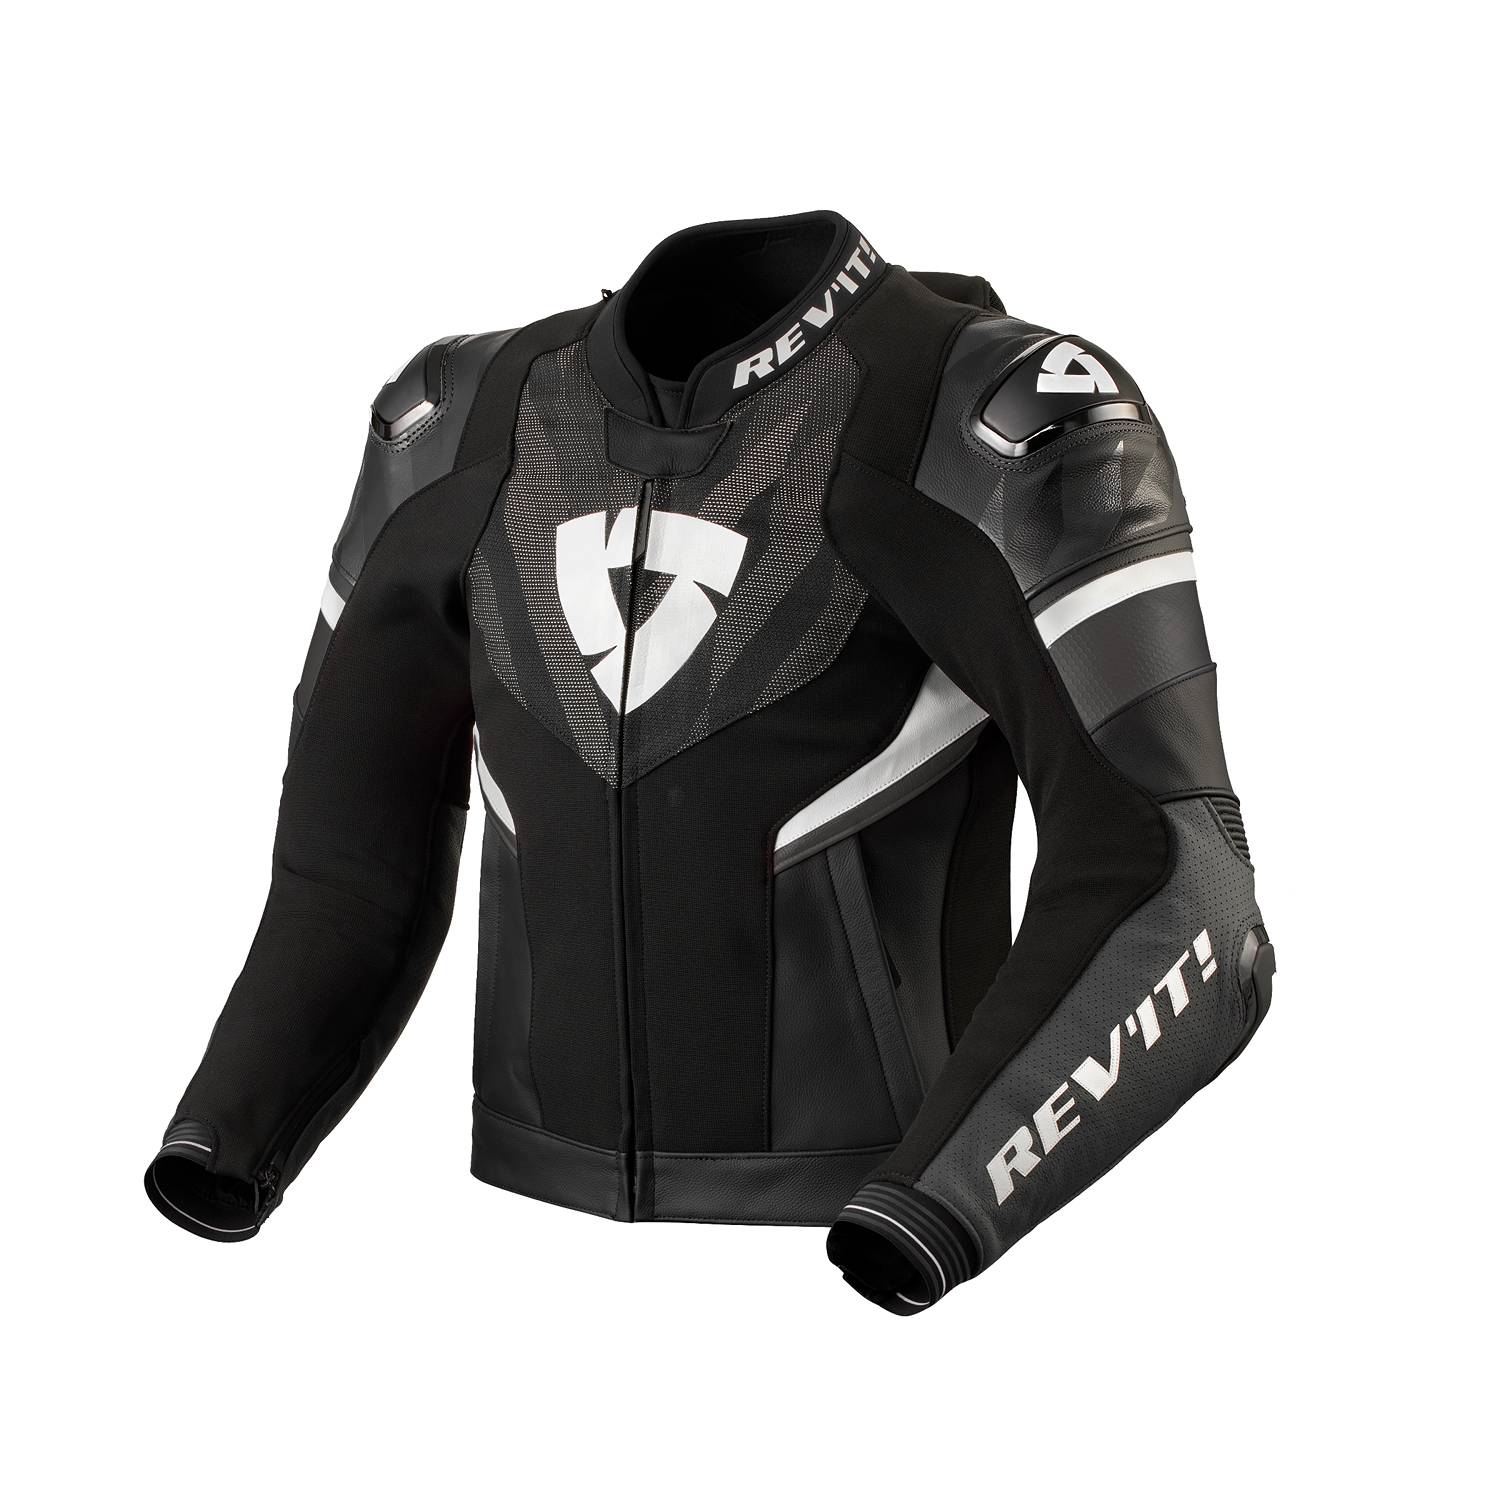 Image of REV'IT! Hyperspeed 2 Pro Jacket Black Anthracite Size 50 EN